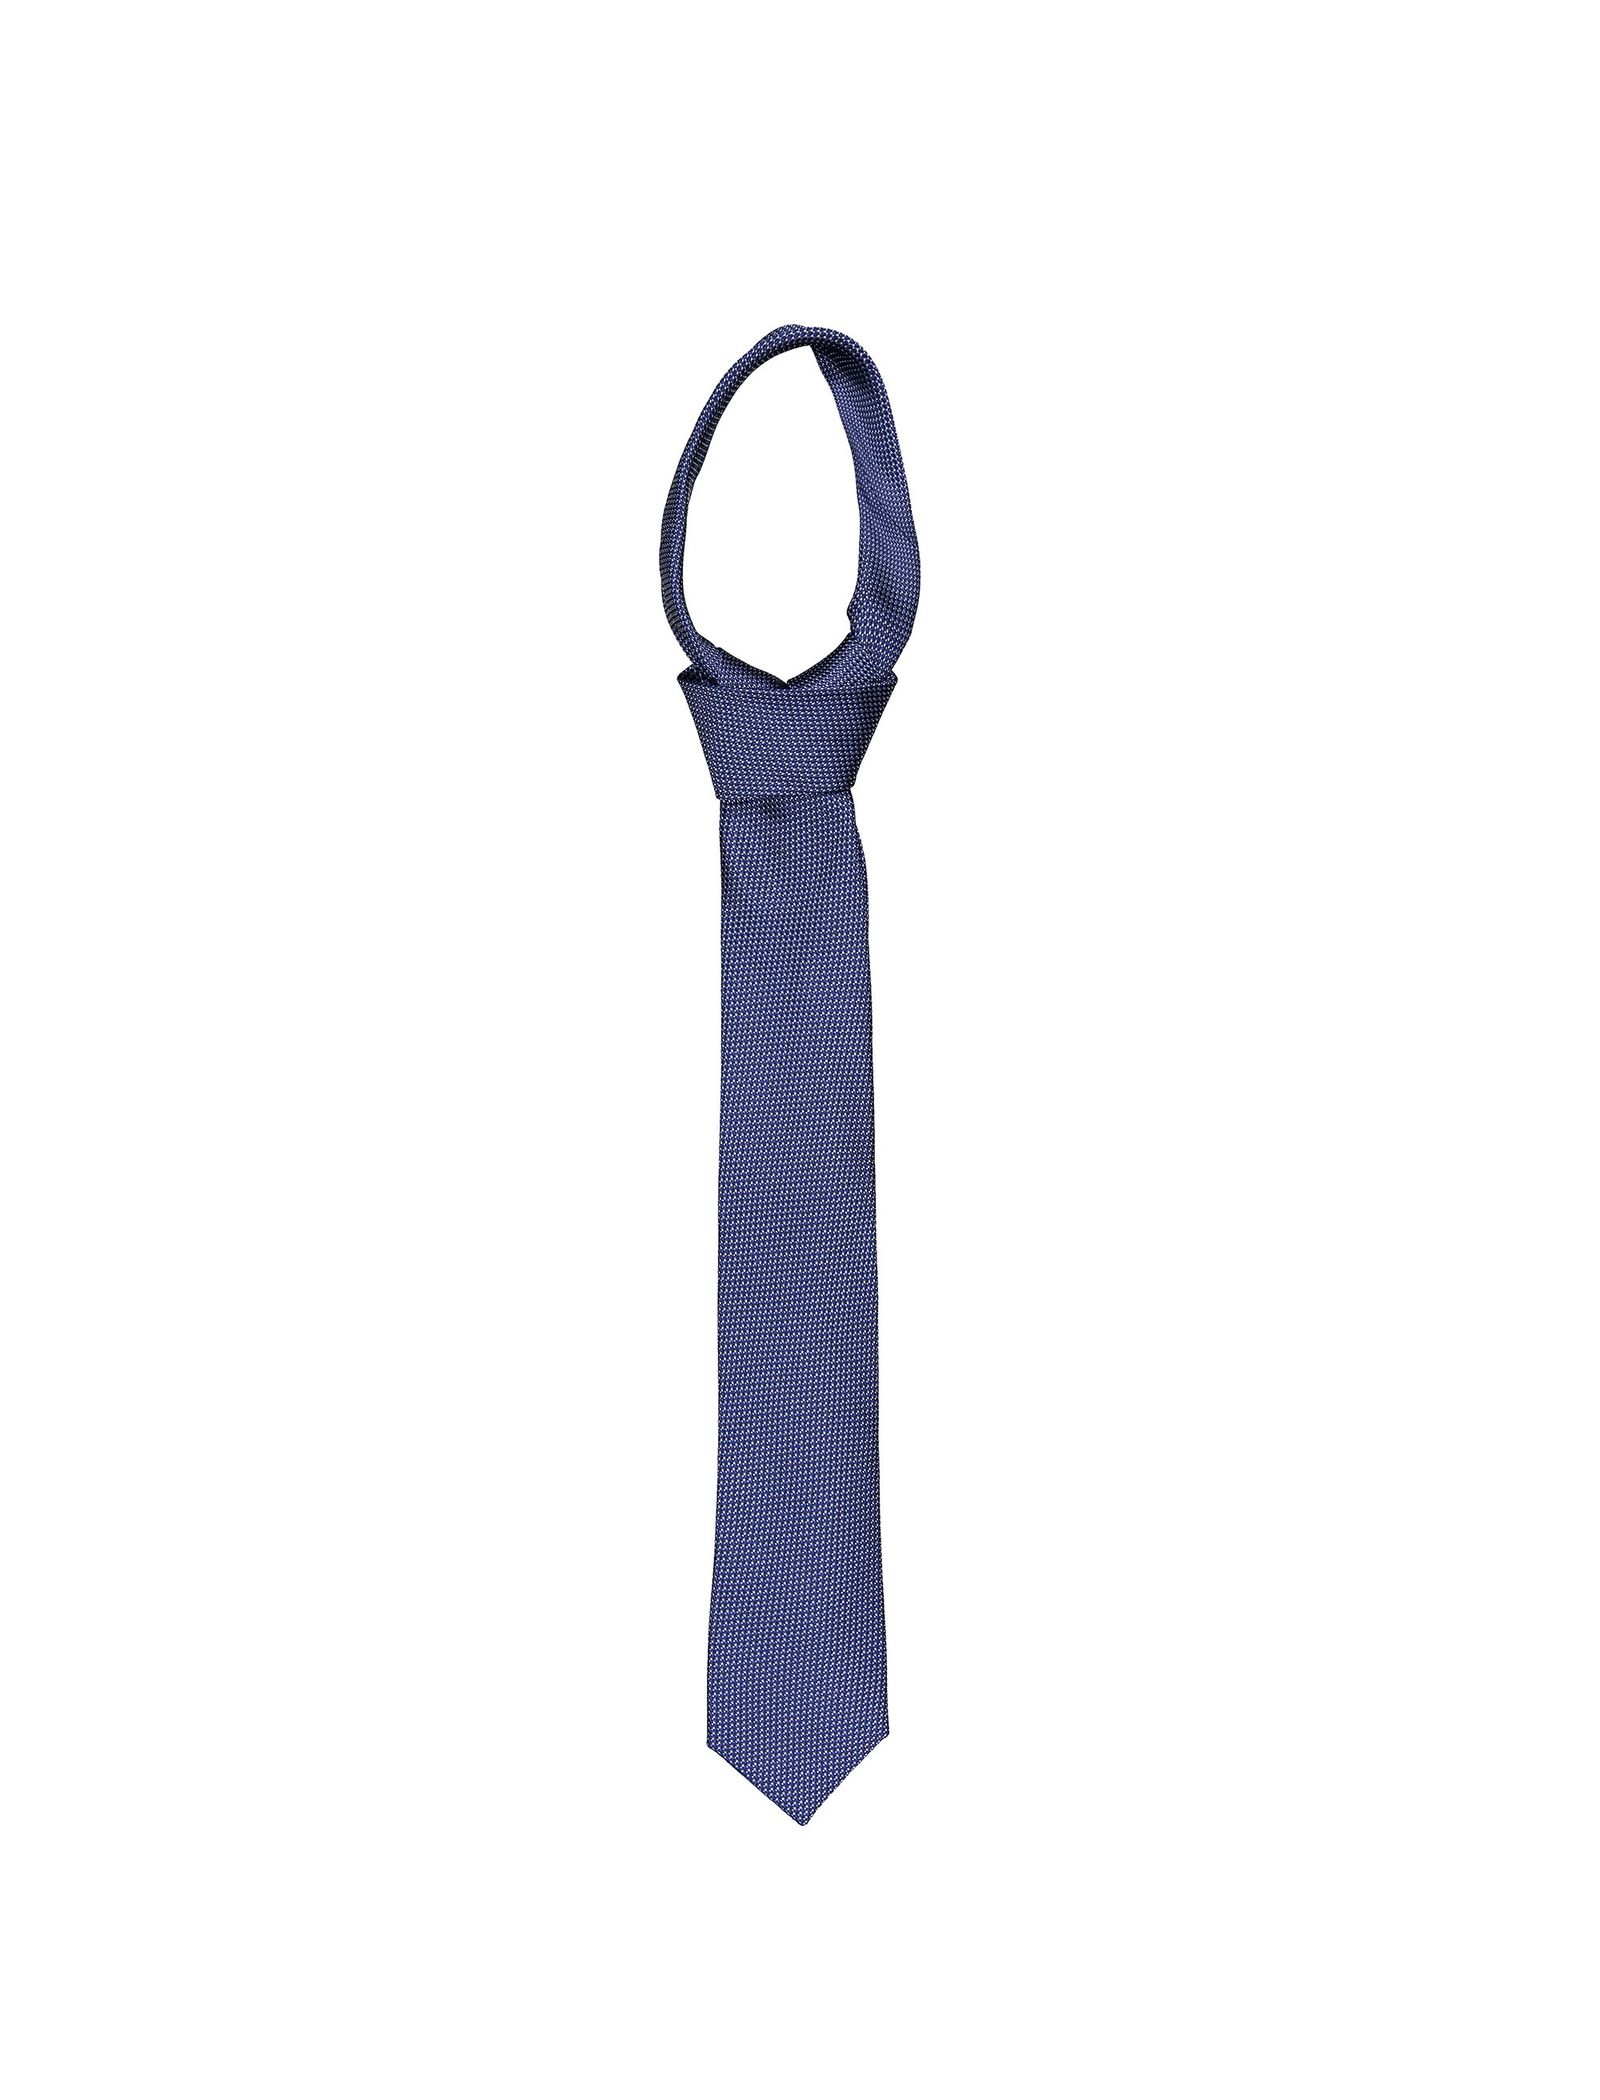 کراوات ابریشم طرح دار مردانه - یوپیم تک سایز - آبي - 1